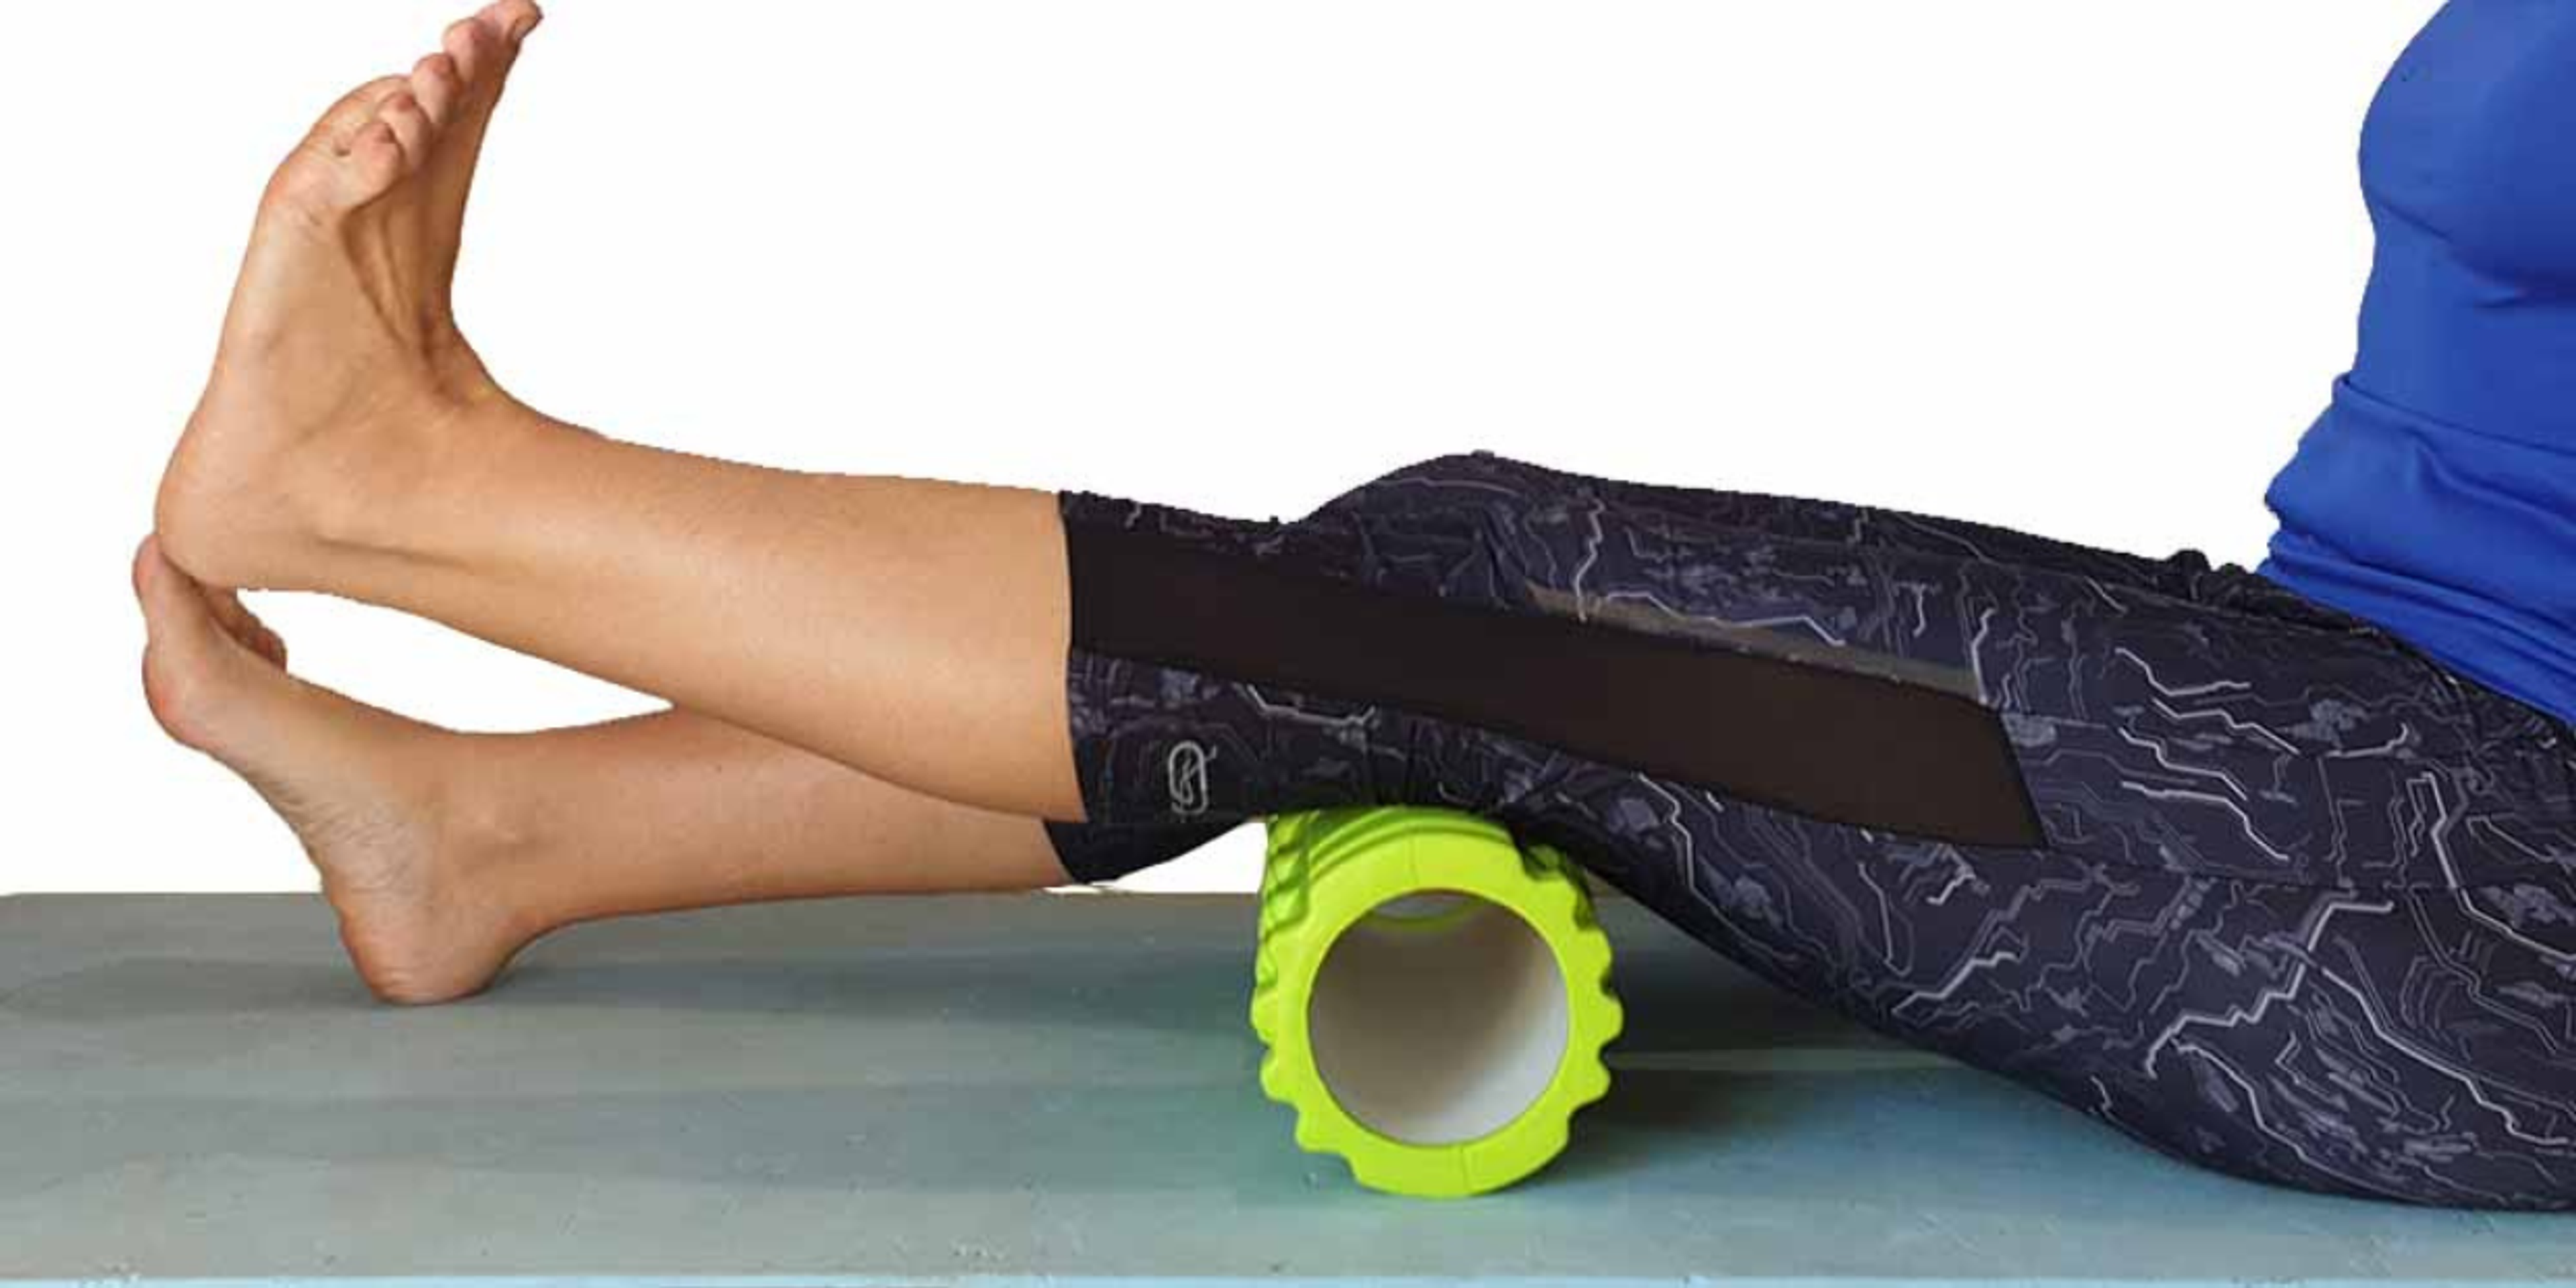 Durch das Handtuch bzw. die Schaumstoffrolle aktiviert diese Übung die Oberschenkelmuskulatur und erweitert den Bewegungsradius bei einem verstauchten und geschwollenen Knie.